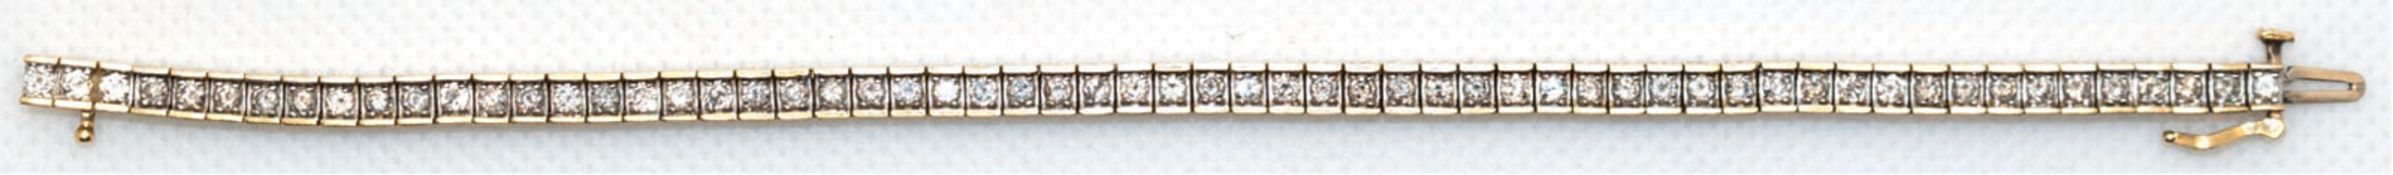 Tennisarmband, 585er GG, besetzt mit 60 Brillanten von zus. ca. 3 ct, si, Kastenschloß mit Sicherhe